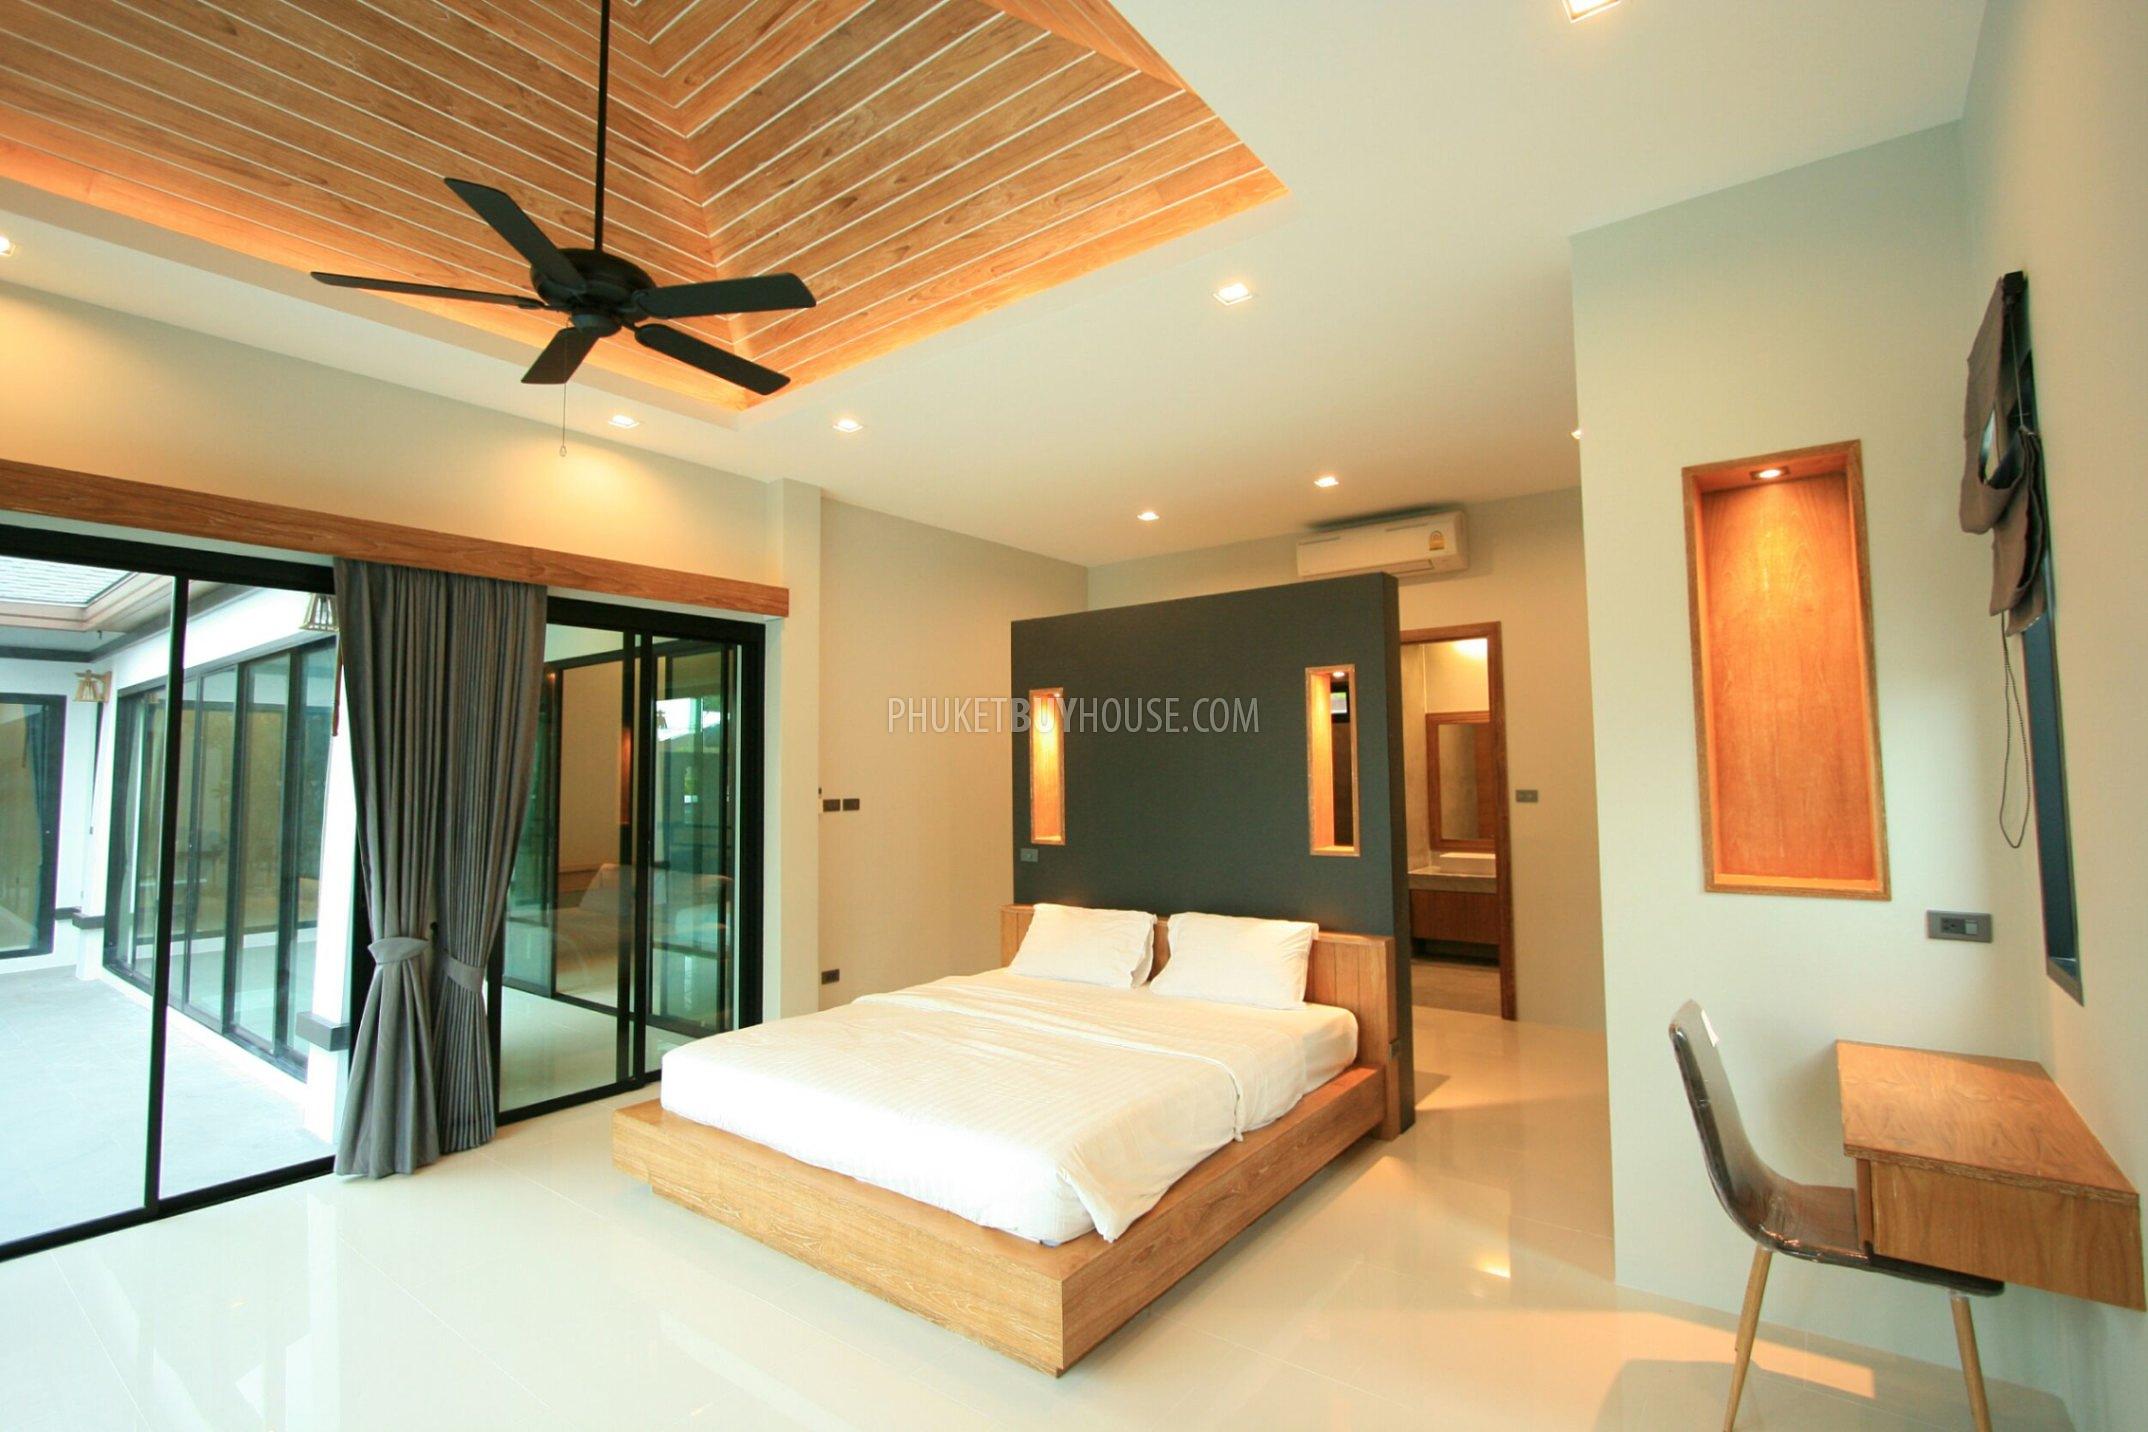 CHA21908: Потрясающая Вилла С Тремя Спальнями И Балийским Дизайном В Чалонге!. Фото #5